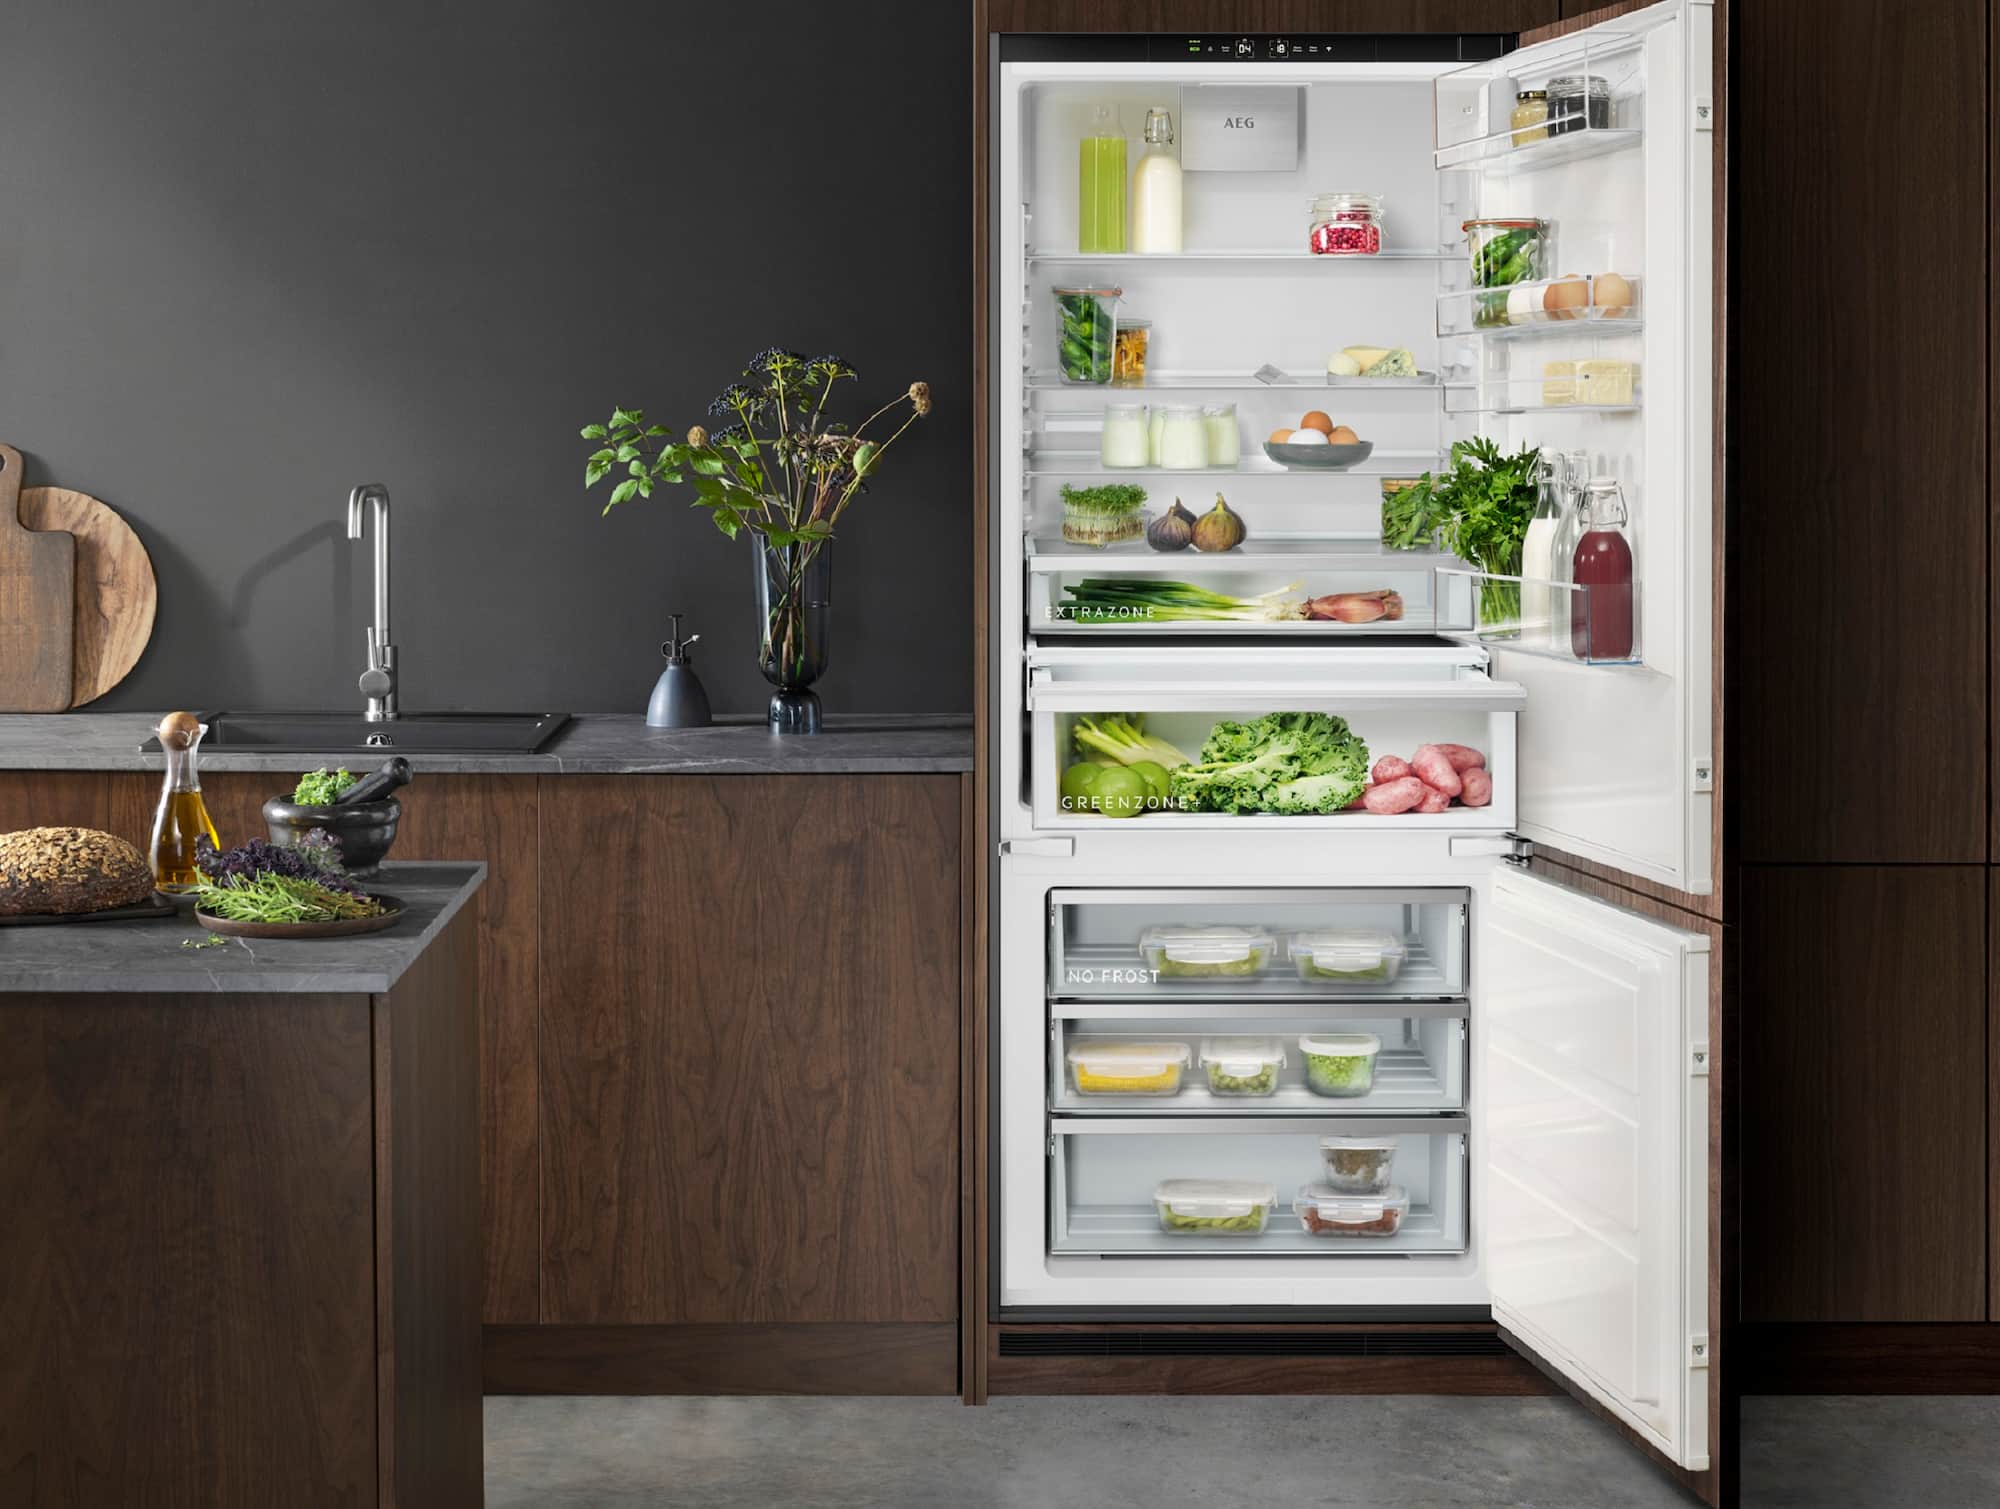 Bei den Küchengeräten stellte AEG eine neue Kühl- und Gefrierserie vor, die dabei hilft, Lebensmittelabfälle zu vermeiden. Darunter sind die Modelle 7000 GreenZone und GreenZone+ – Kühlschränke, deren Innenverkleidung aus bis zu 70% recyceltem Kunststoff besteht. 